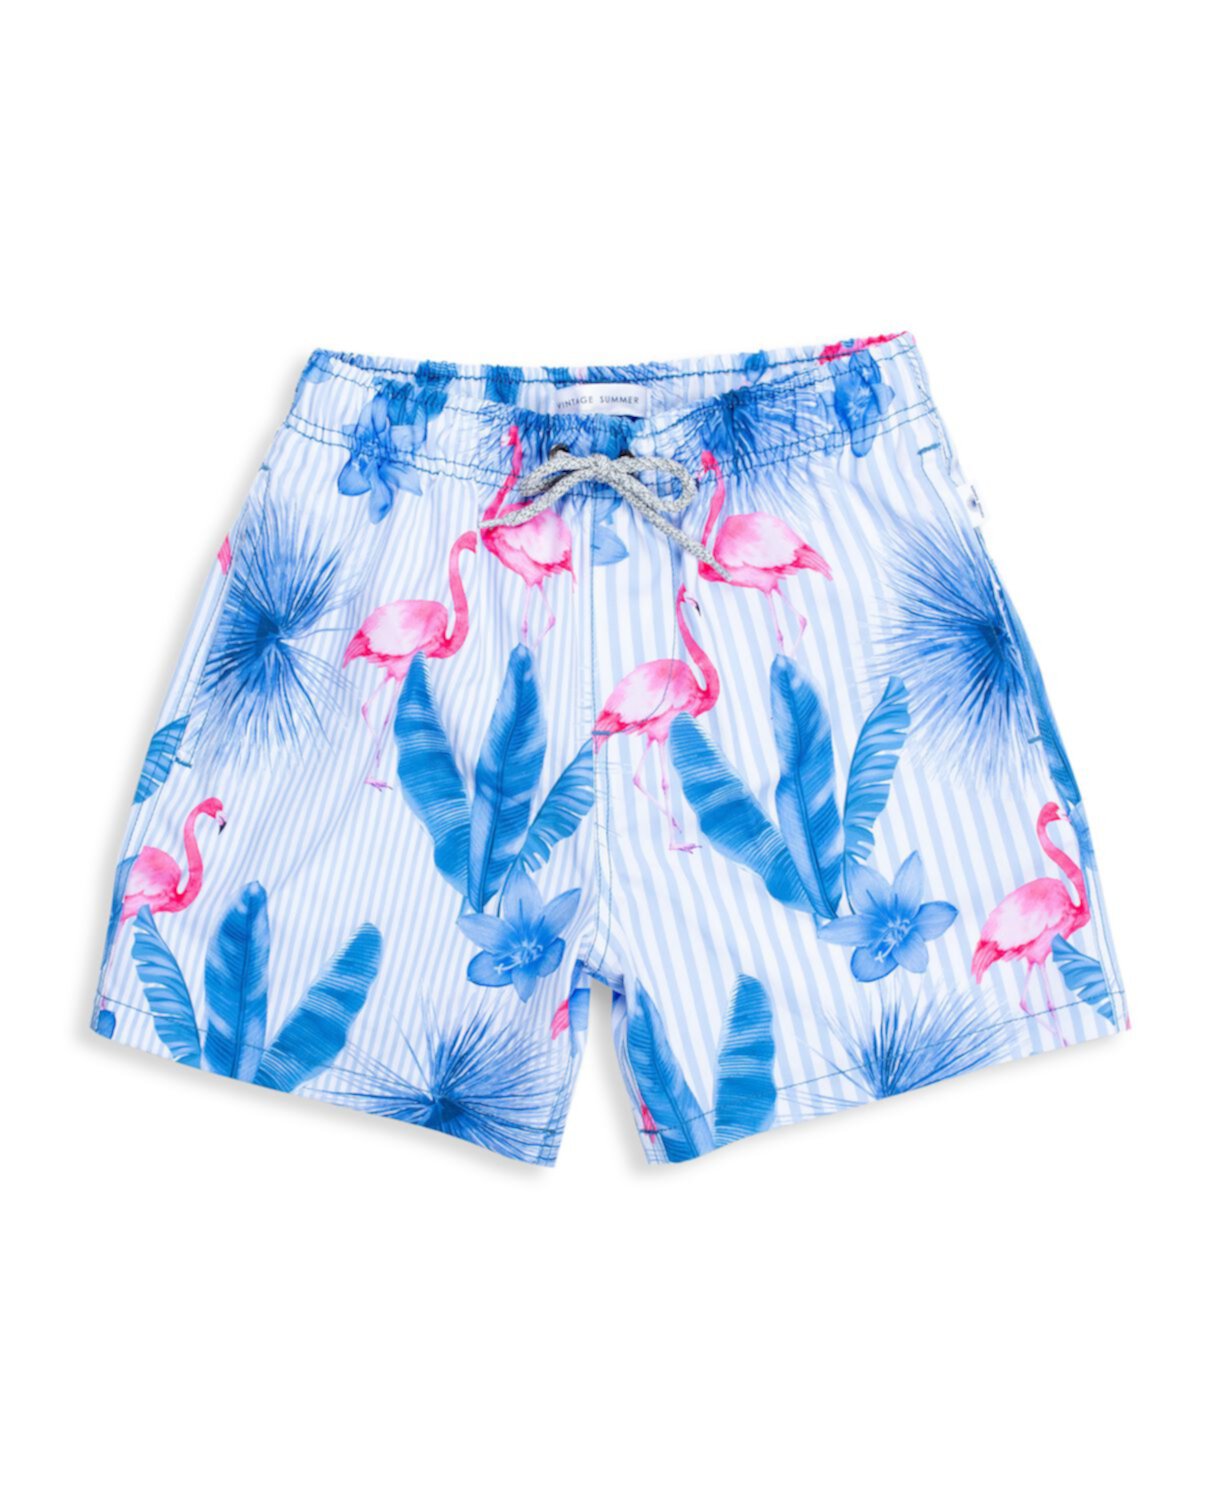 Купальные шорты в тропическую полоску с принтом фламинго для маленького мальчика Vintage Summer